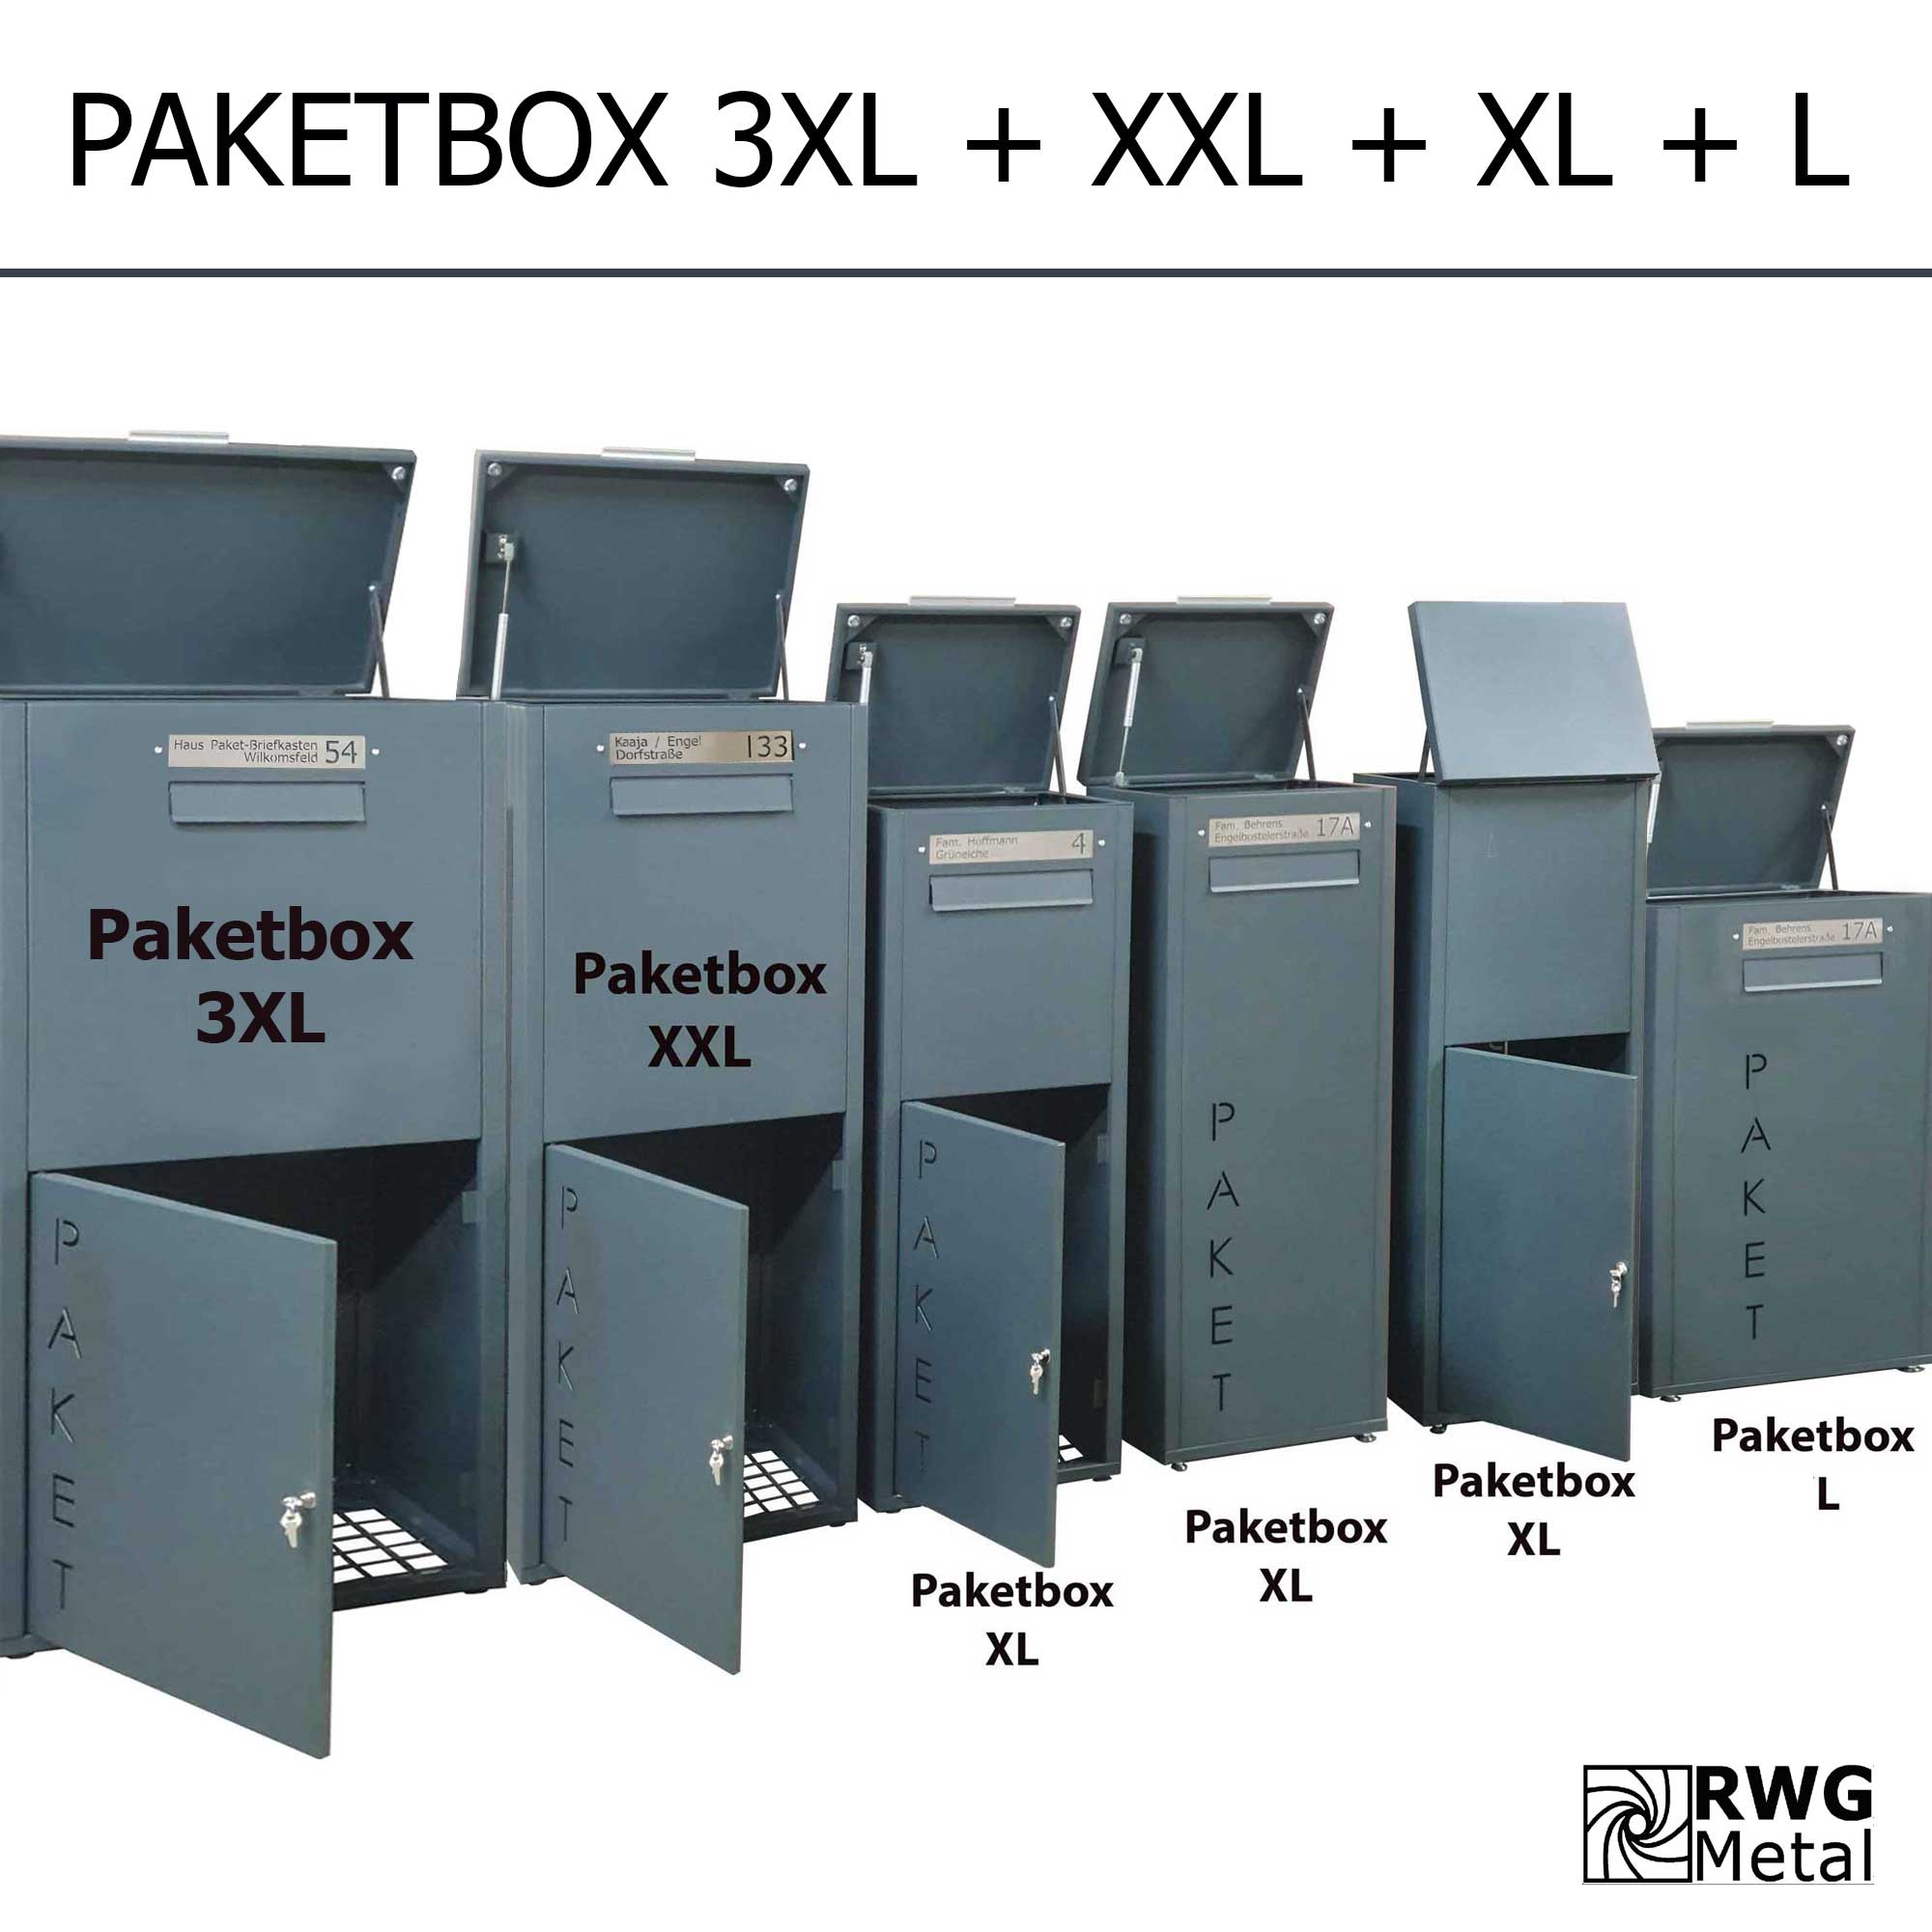 Paketbox-3XL-+XXL+XL+L_rwgmetal-02